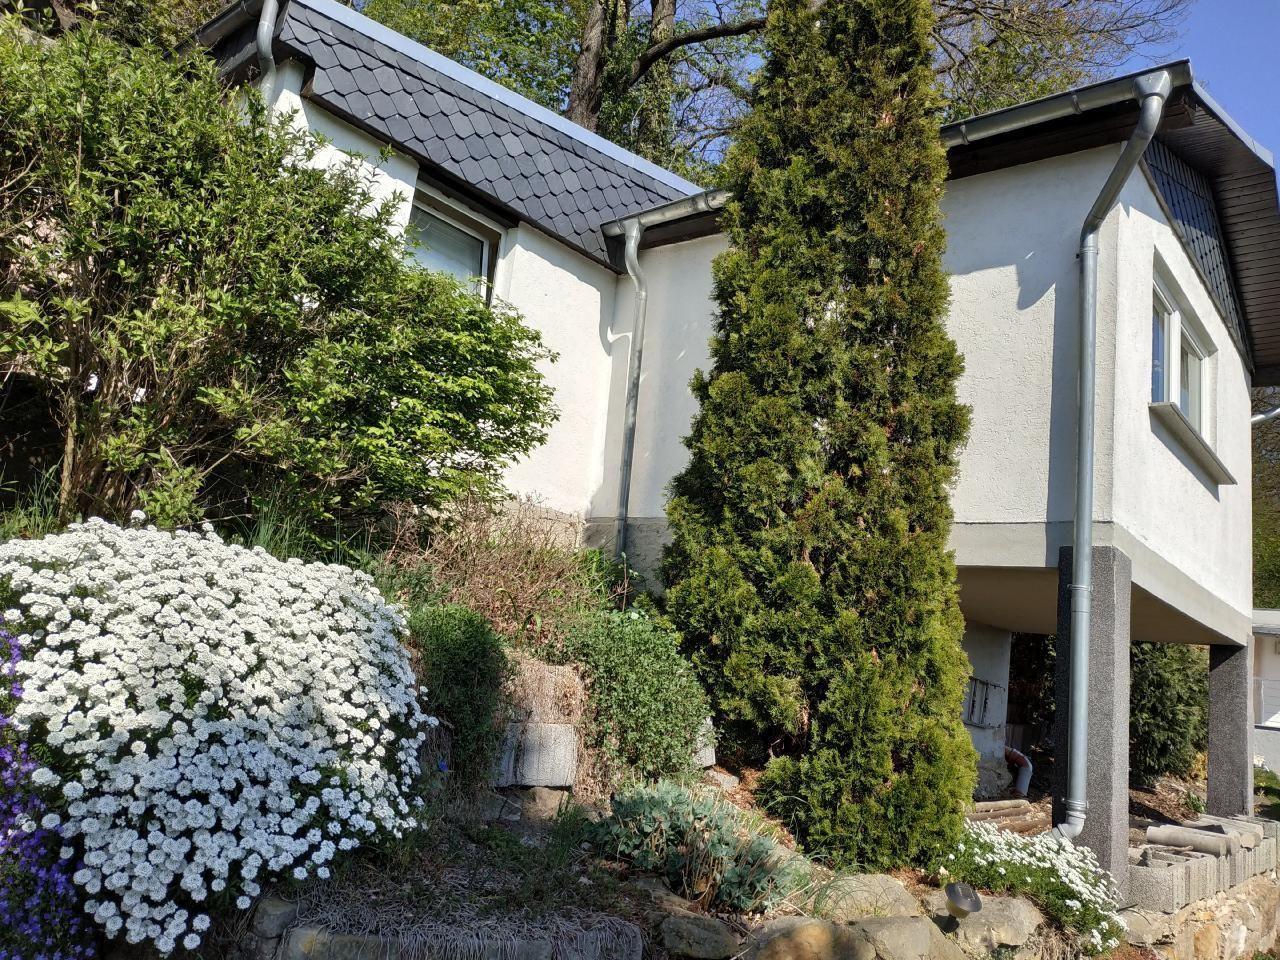 Ferienhaus in Pirna mit Schöner Terrasse  in Sachsen